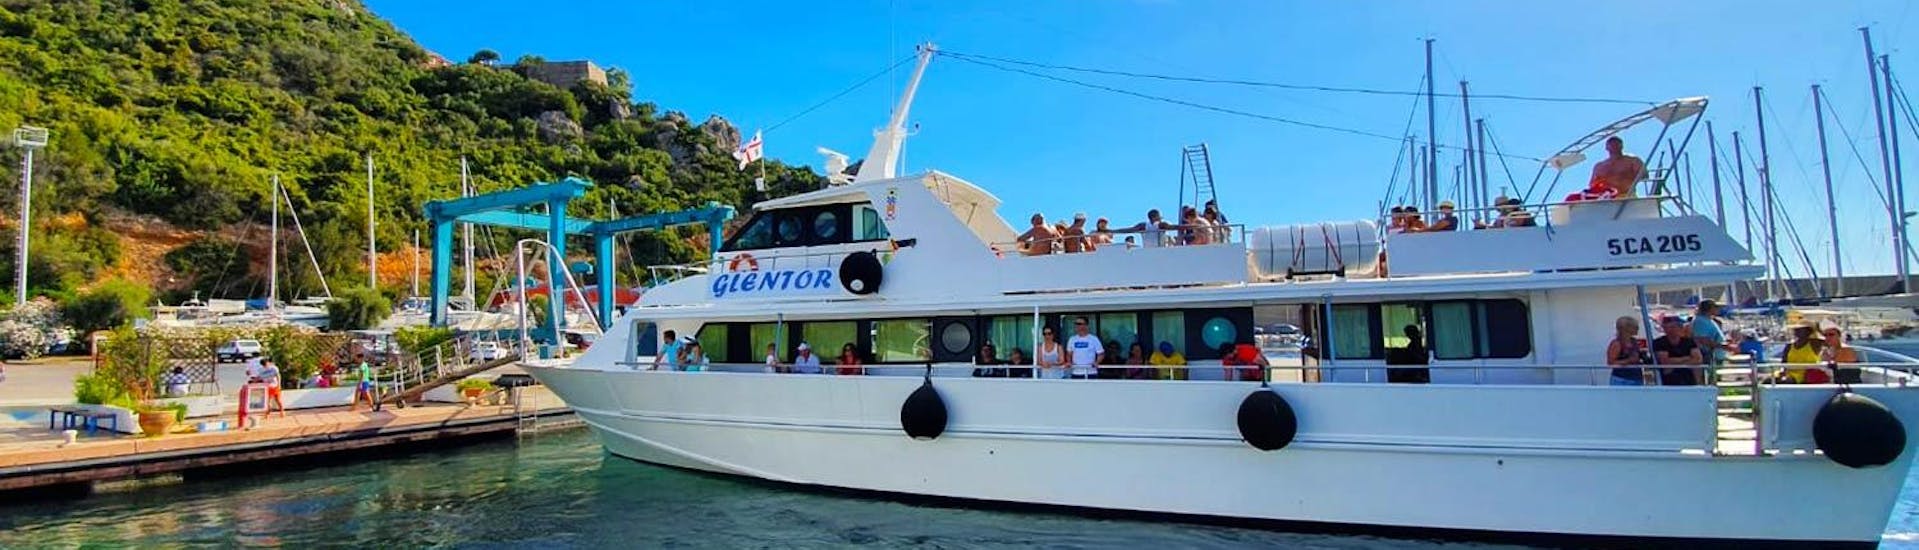 Foto della nostra motonave Glentor durante una gita in barca con Escursioni Glentor Arbatax.